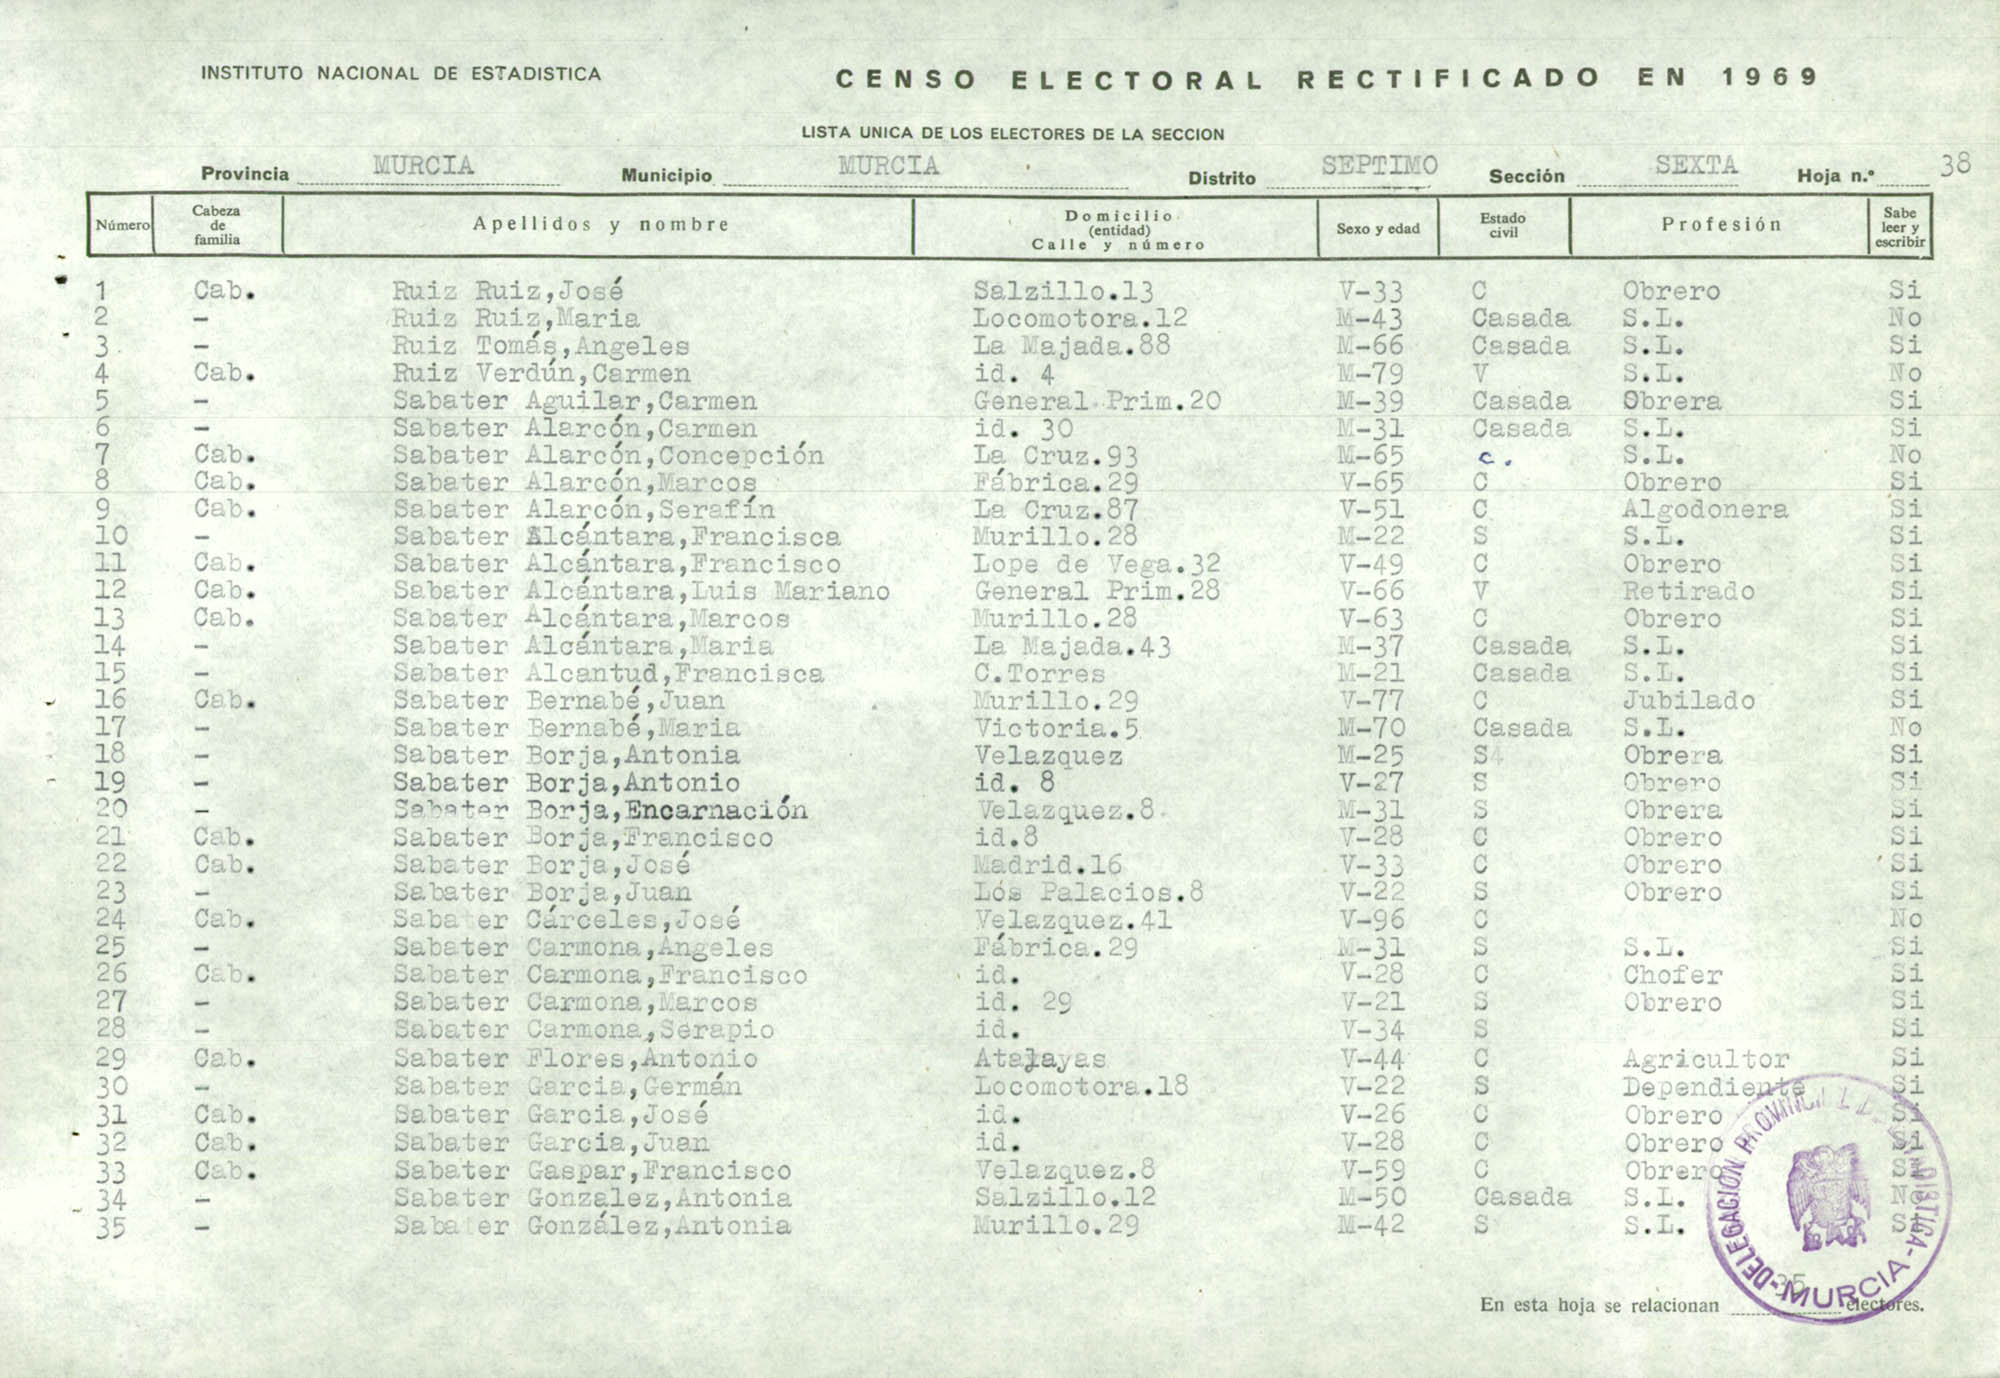 Censo electoral rectificado en 1969: listas definitivas de Murcia, Distrito 7º, sección 6ª.